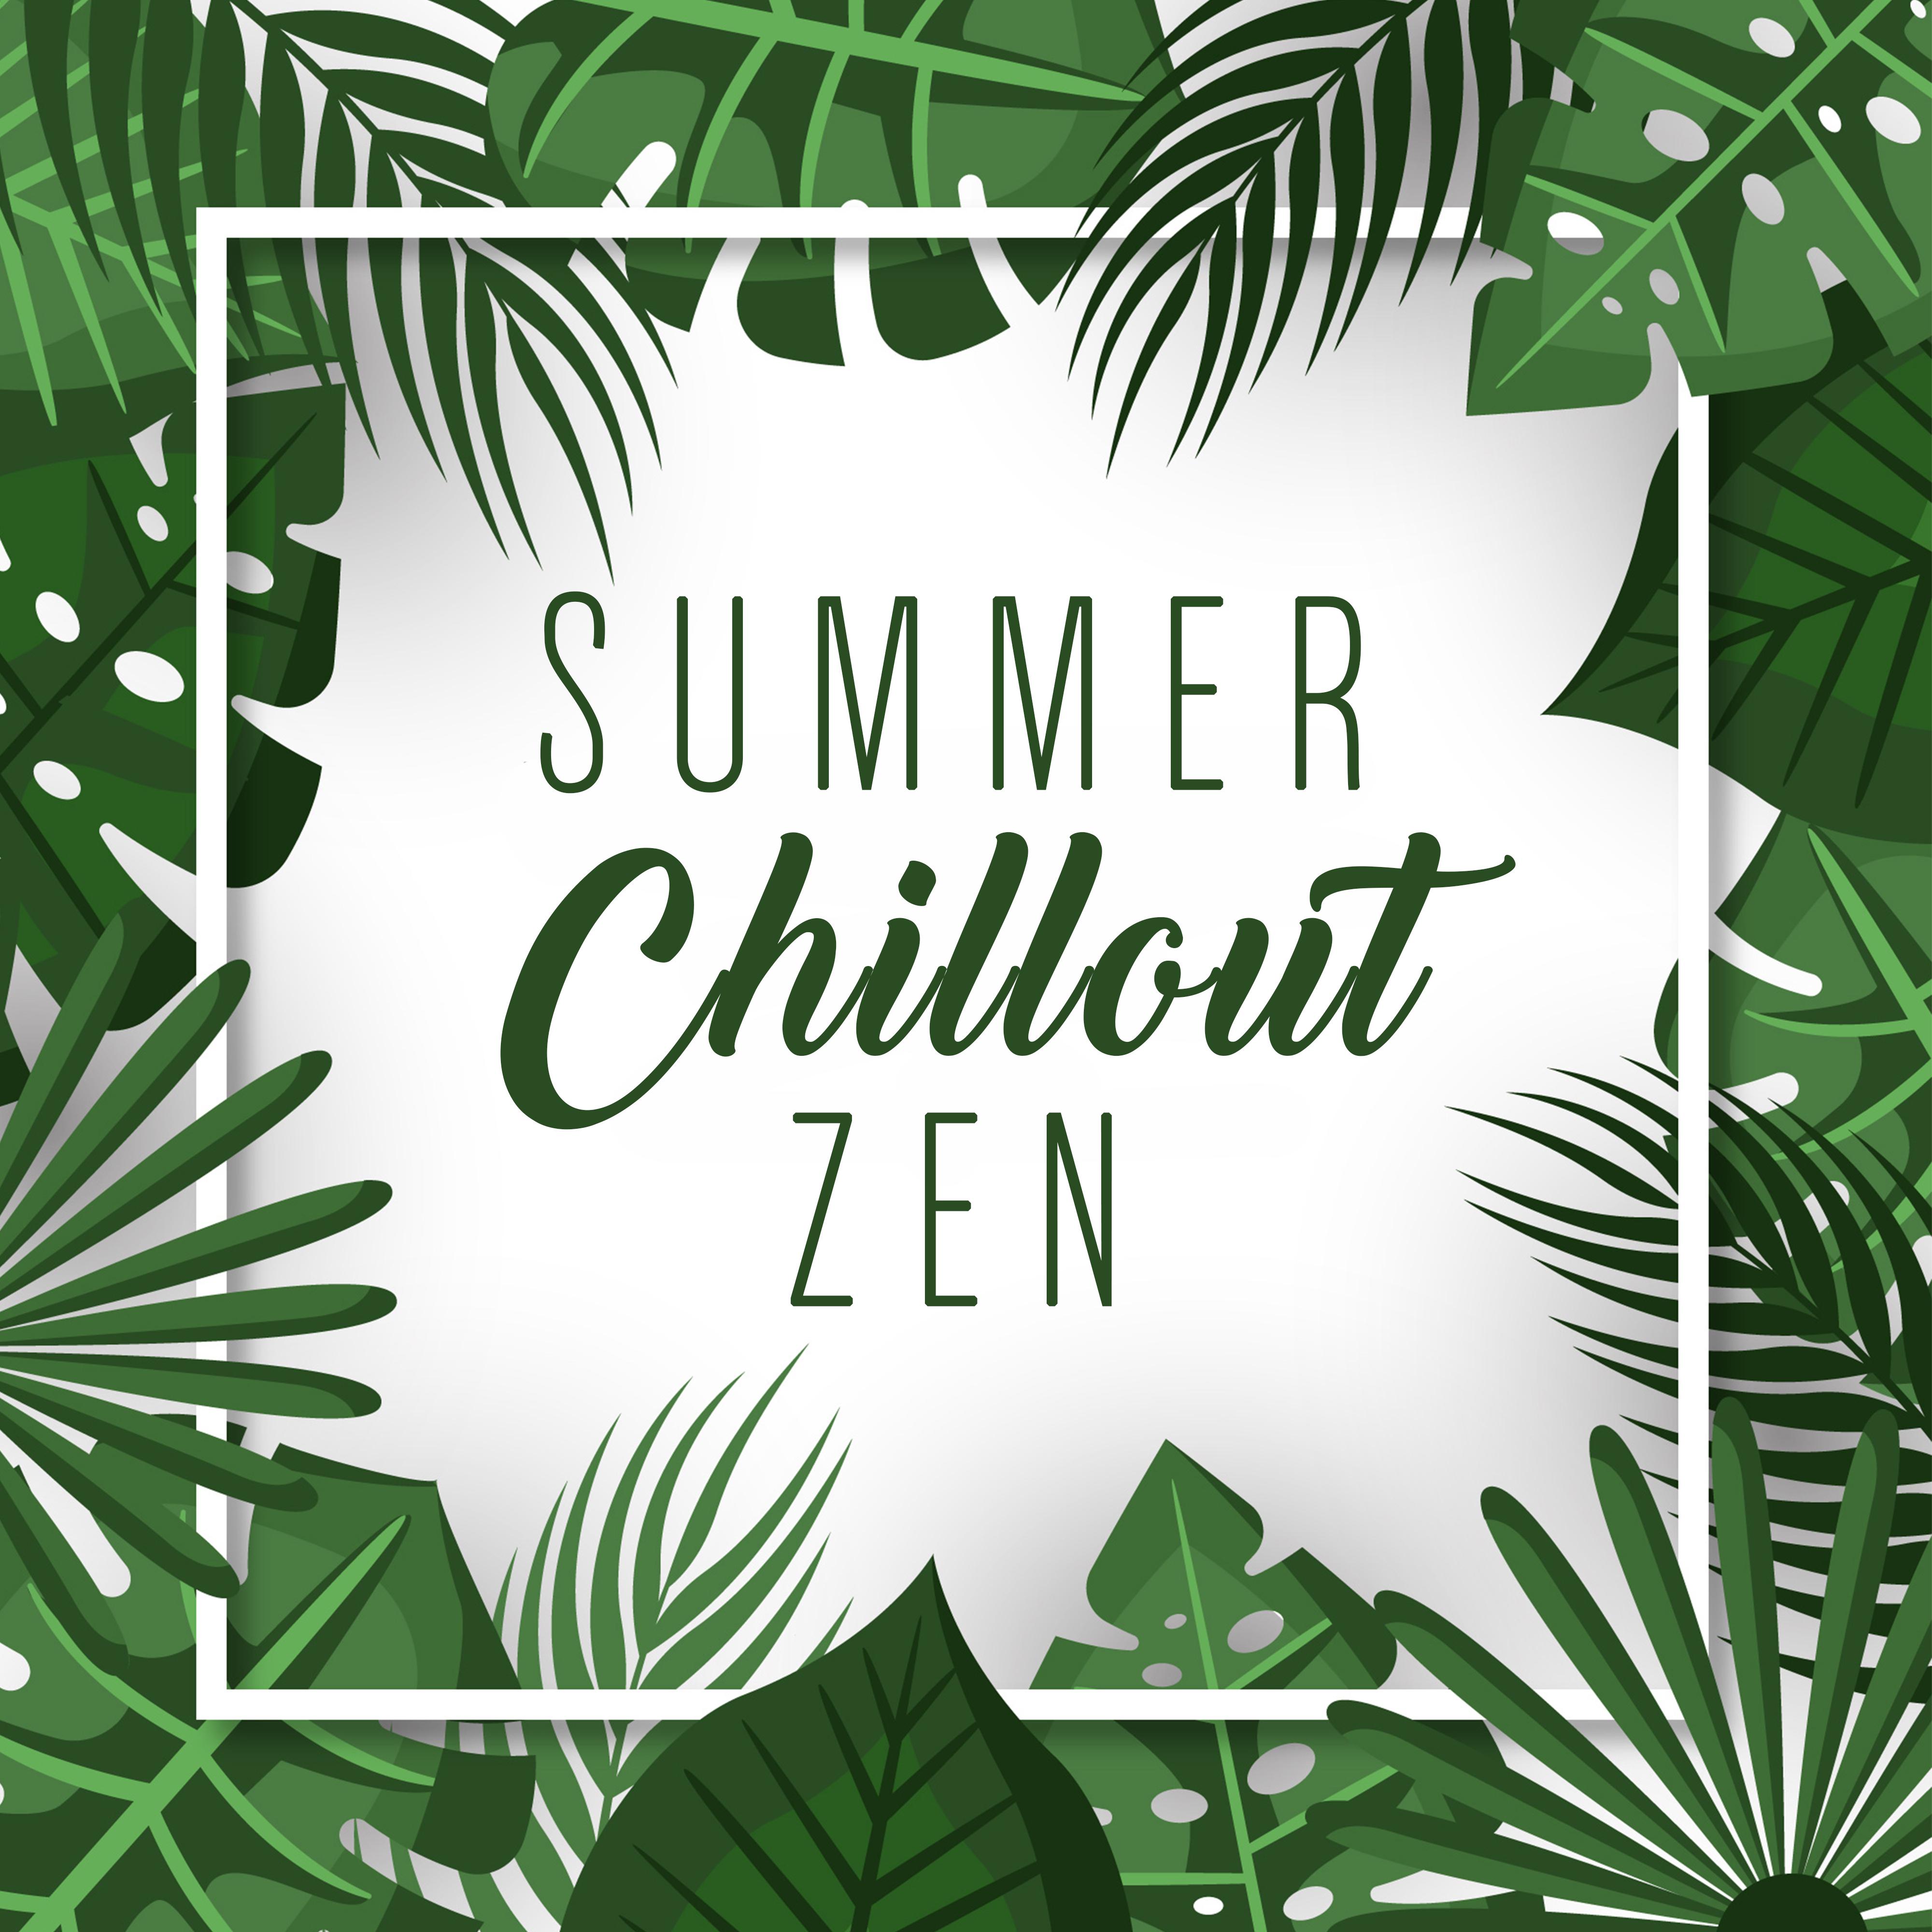 Summer Chillout Zen